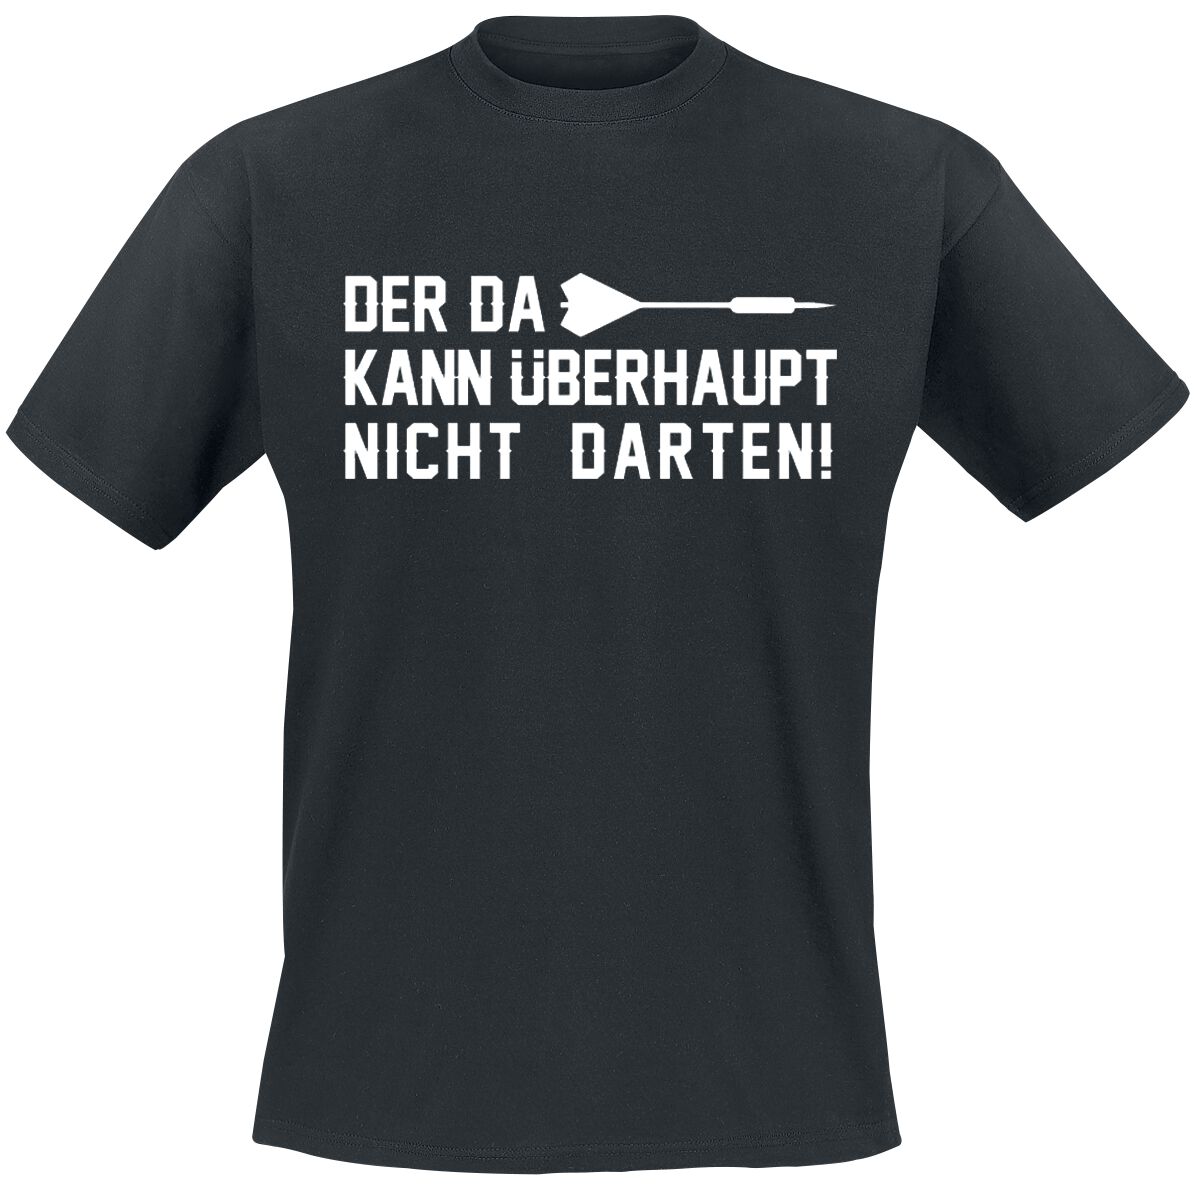 Darts T-Shirt - Der da kann überhaupt nicht darten! - M bis 3XL - für Männer - Größe XL - schwarz